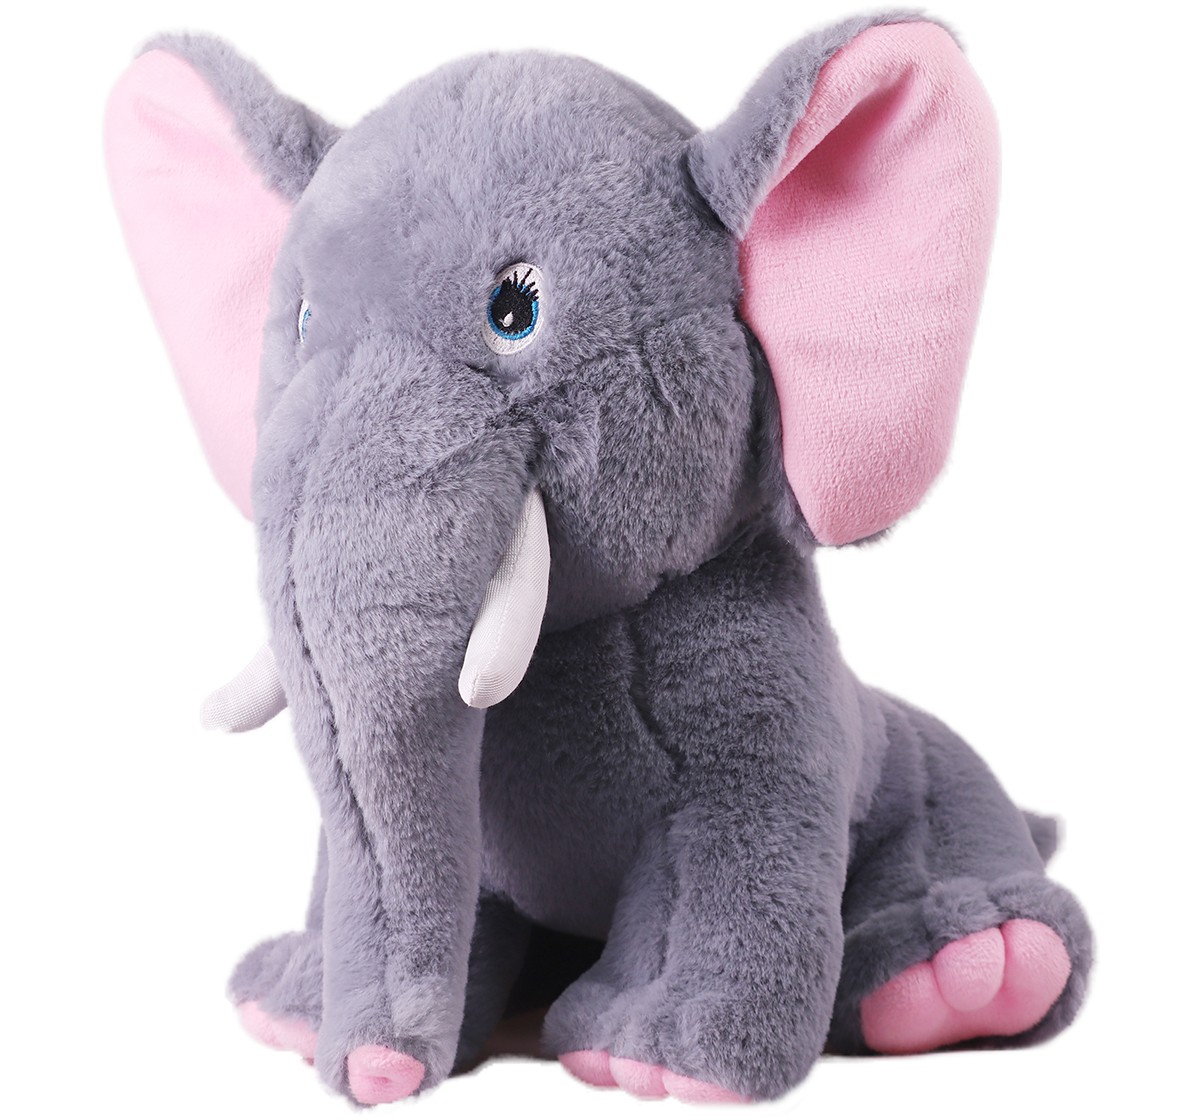 Mirada 32cm sitting elephant soft toy Multicolor 3Y+